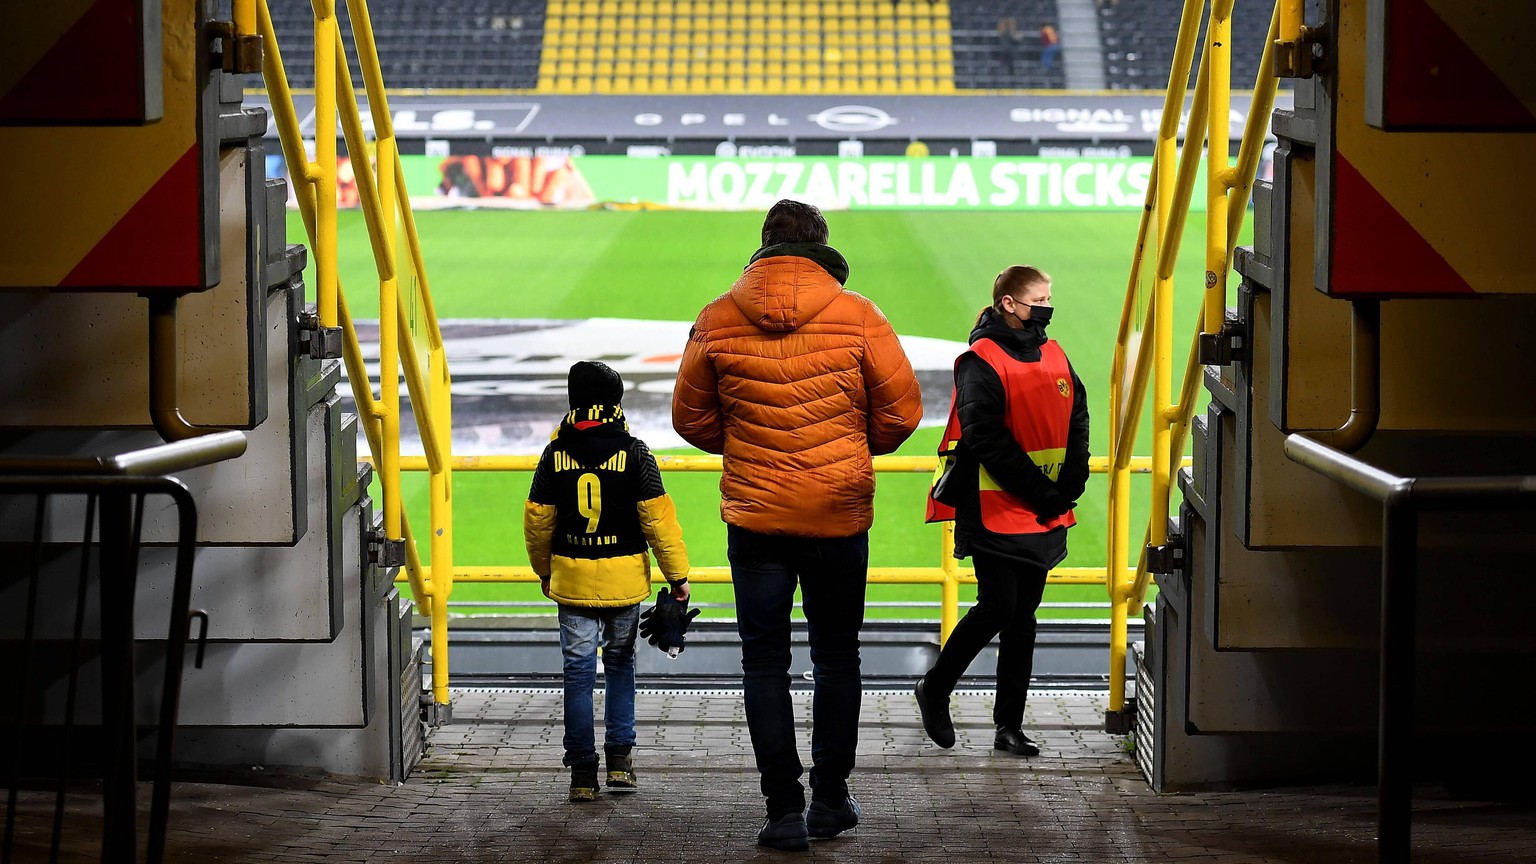 Beneidenswerter Junge: Er weiss noch wenig von den Sorgen von uns Grossen, sondern lässt sich vom BVB im Westfalenstadion begeistern.